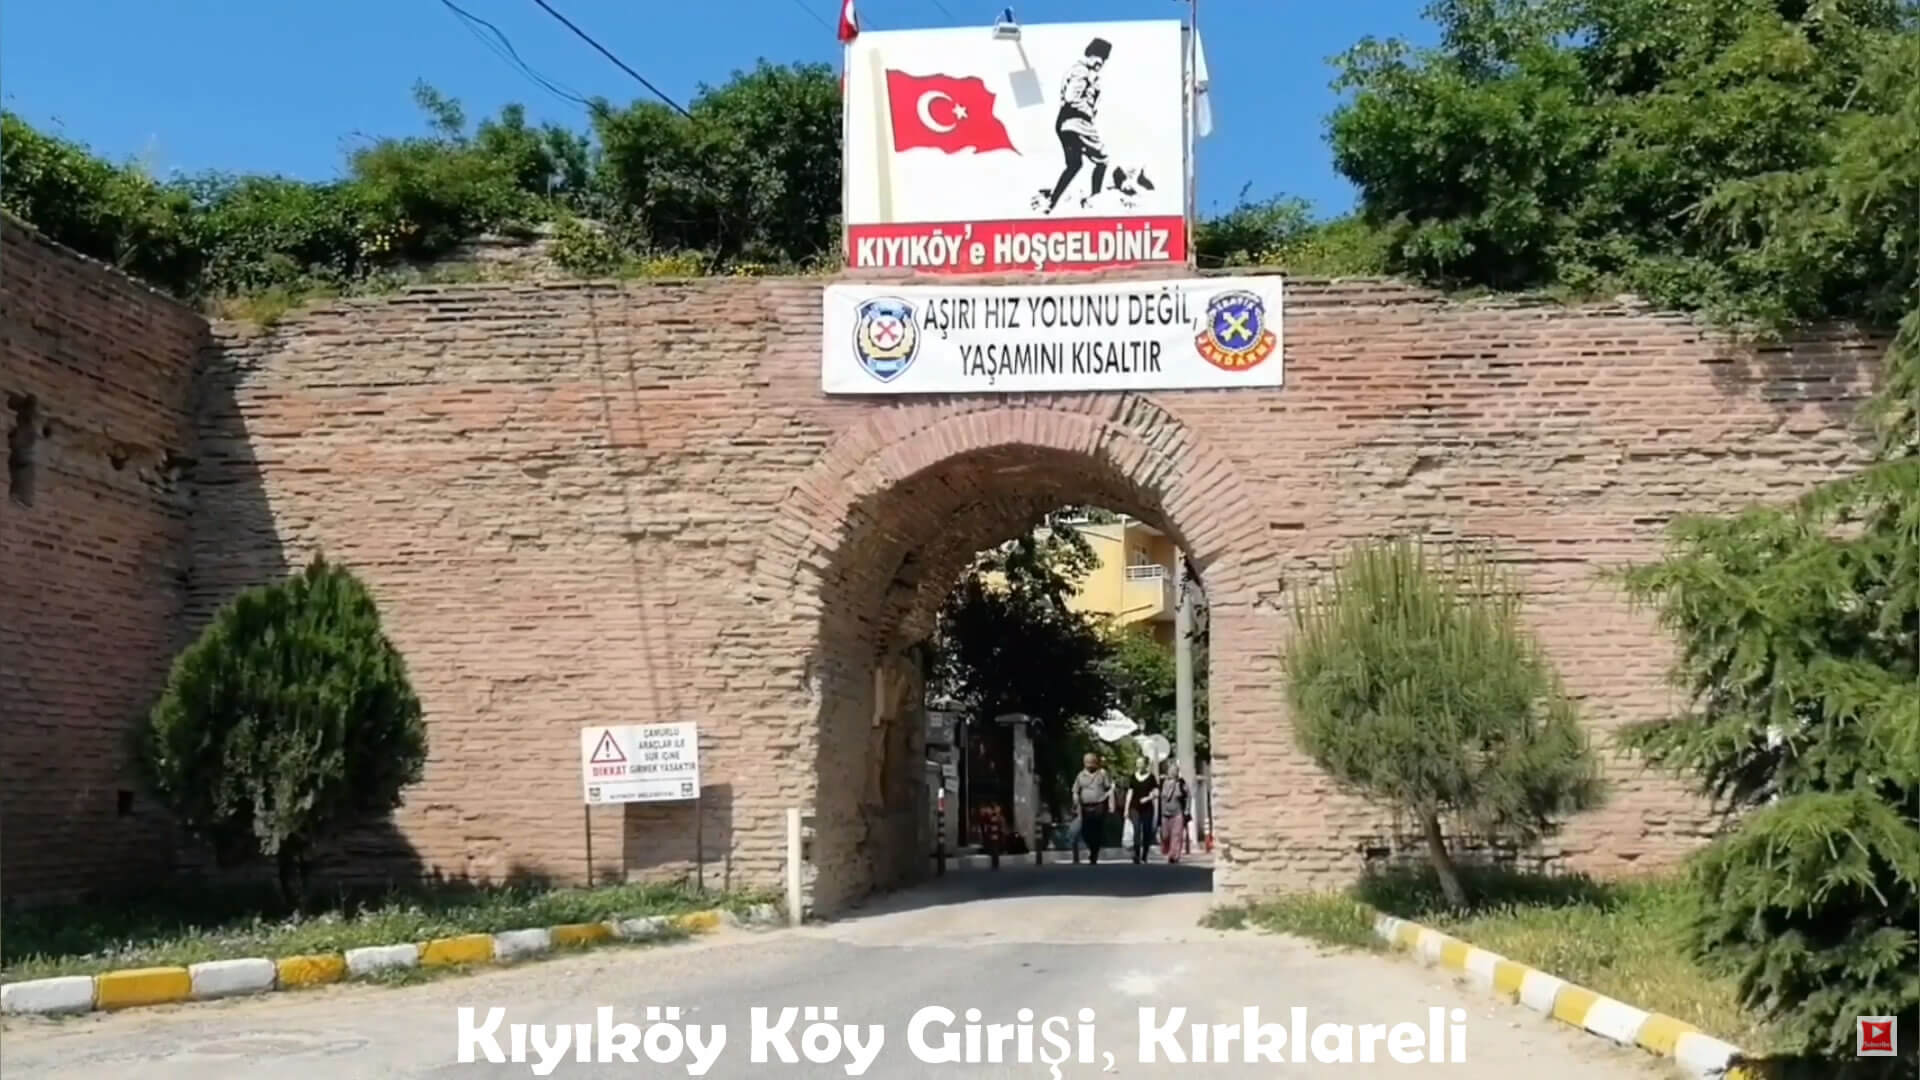 Kiyikoy Village Entrance, Kirklareli